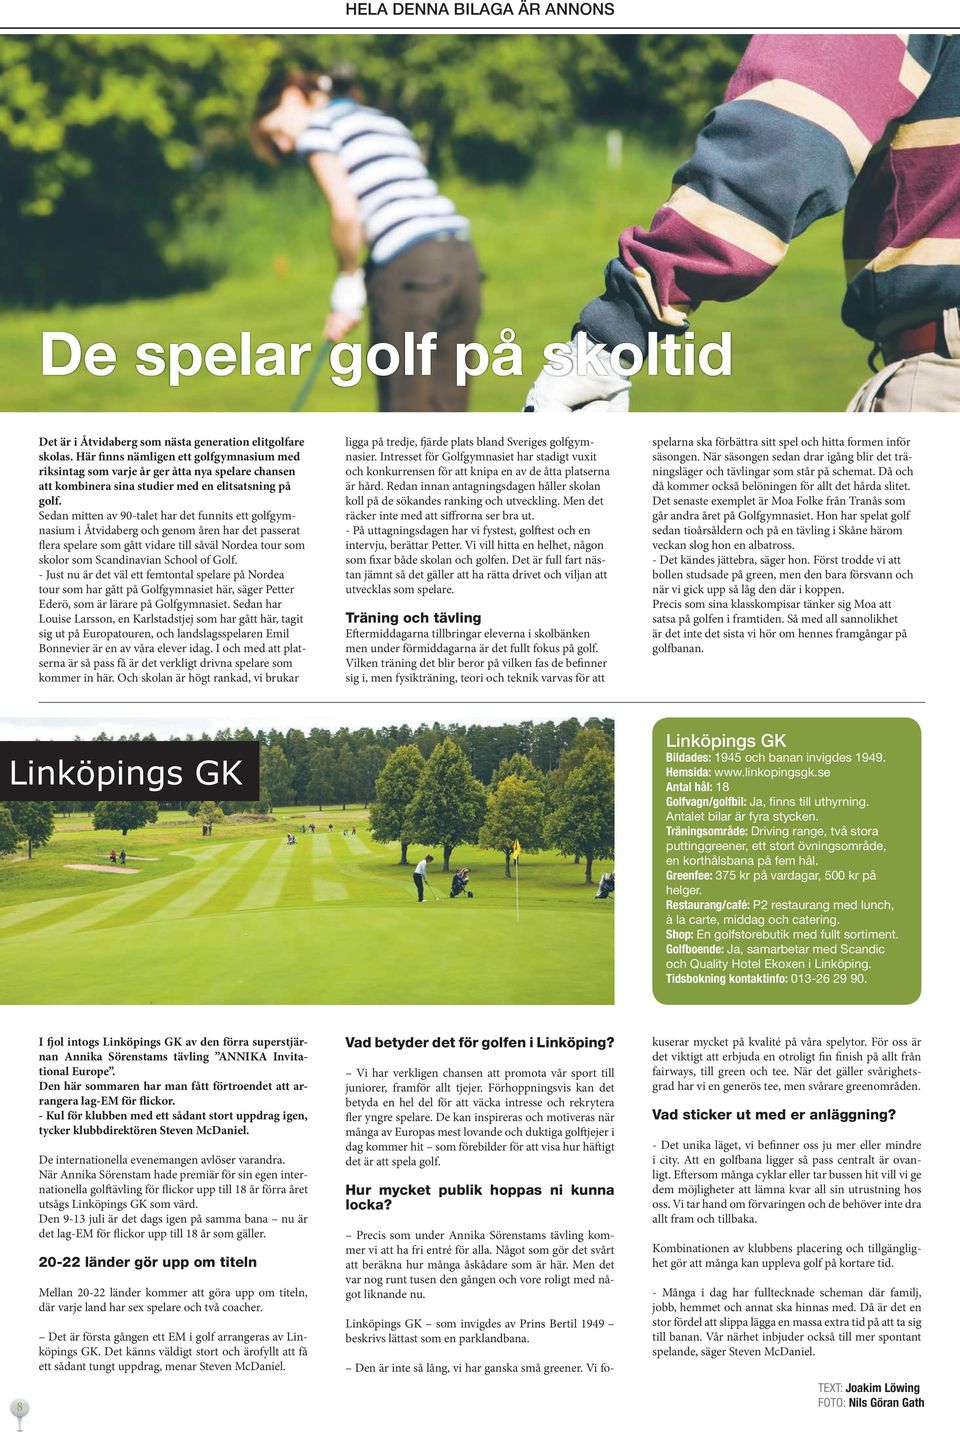 Sedan mitten av 90-talet har det funnits ett golfgymnasium i Åtvidaberg och genom åren har det passerat flera spelare som gått vidare till såväl Nordea tour som skolor som Scandinavian School of Golf.